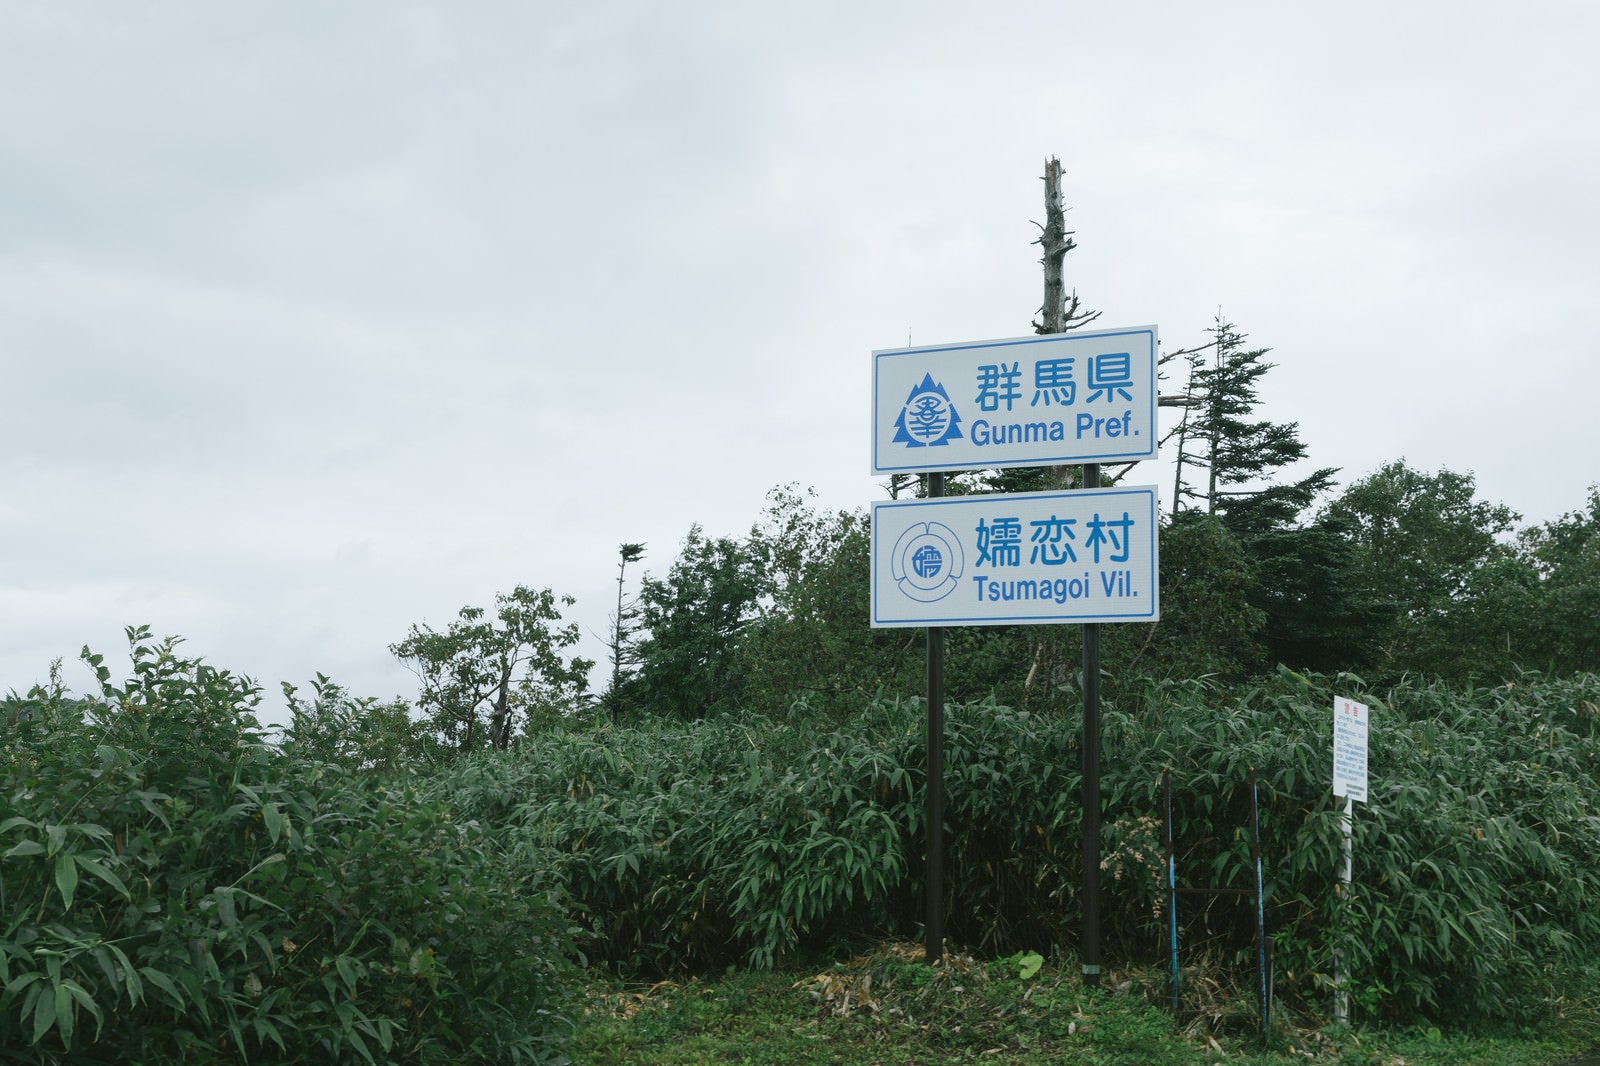 「群馬県、嬬恋村の看板」の写真